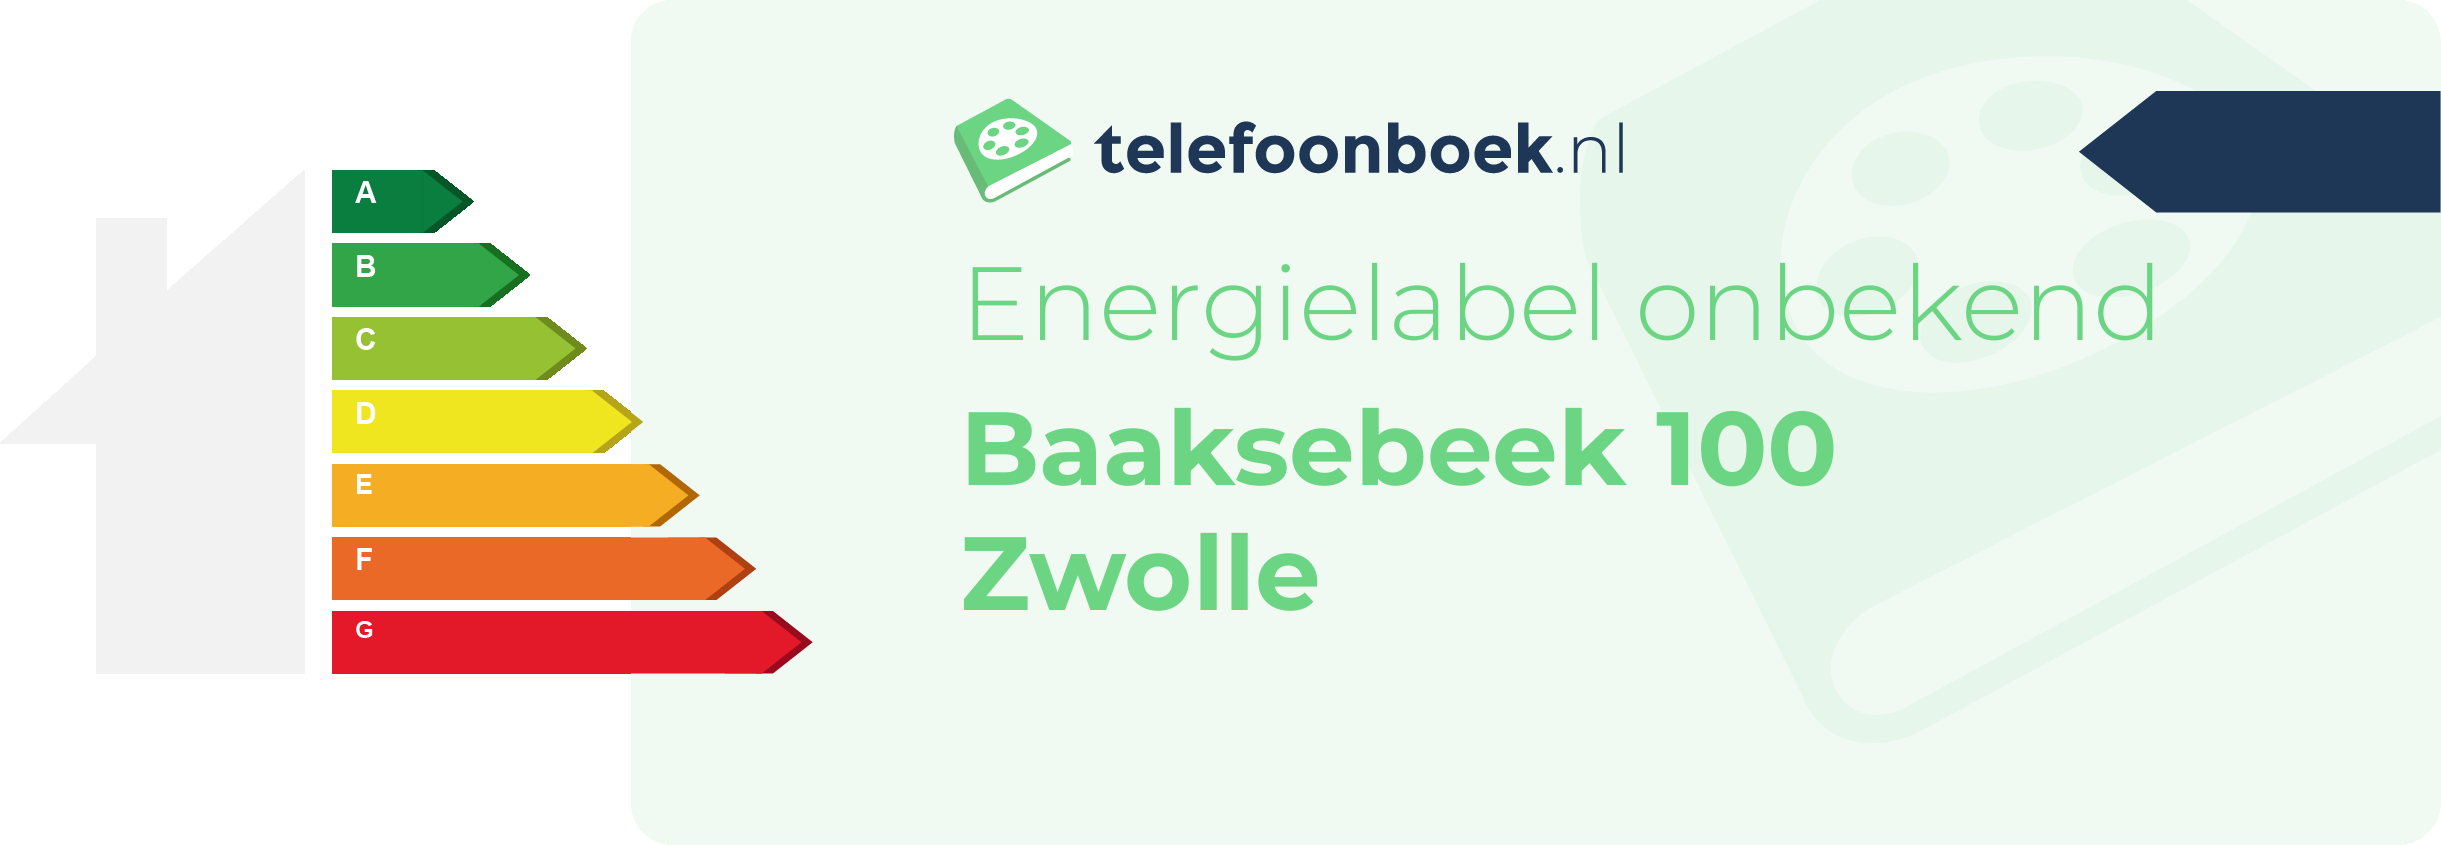 Energielabel Baaksebeek 100 Zwolle